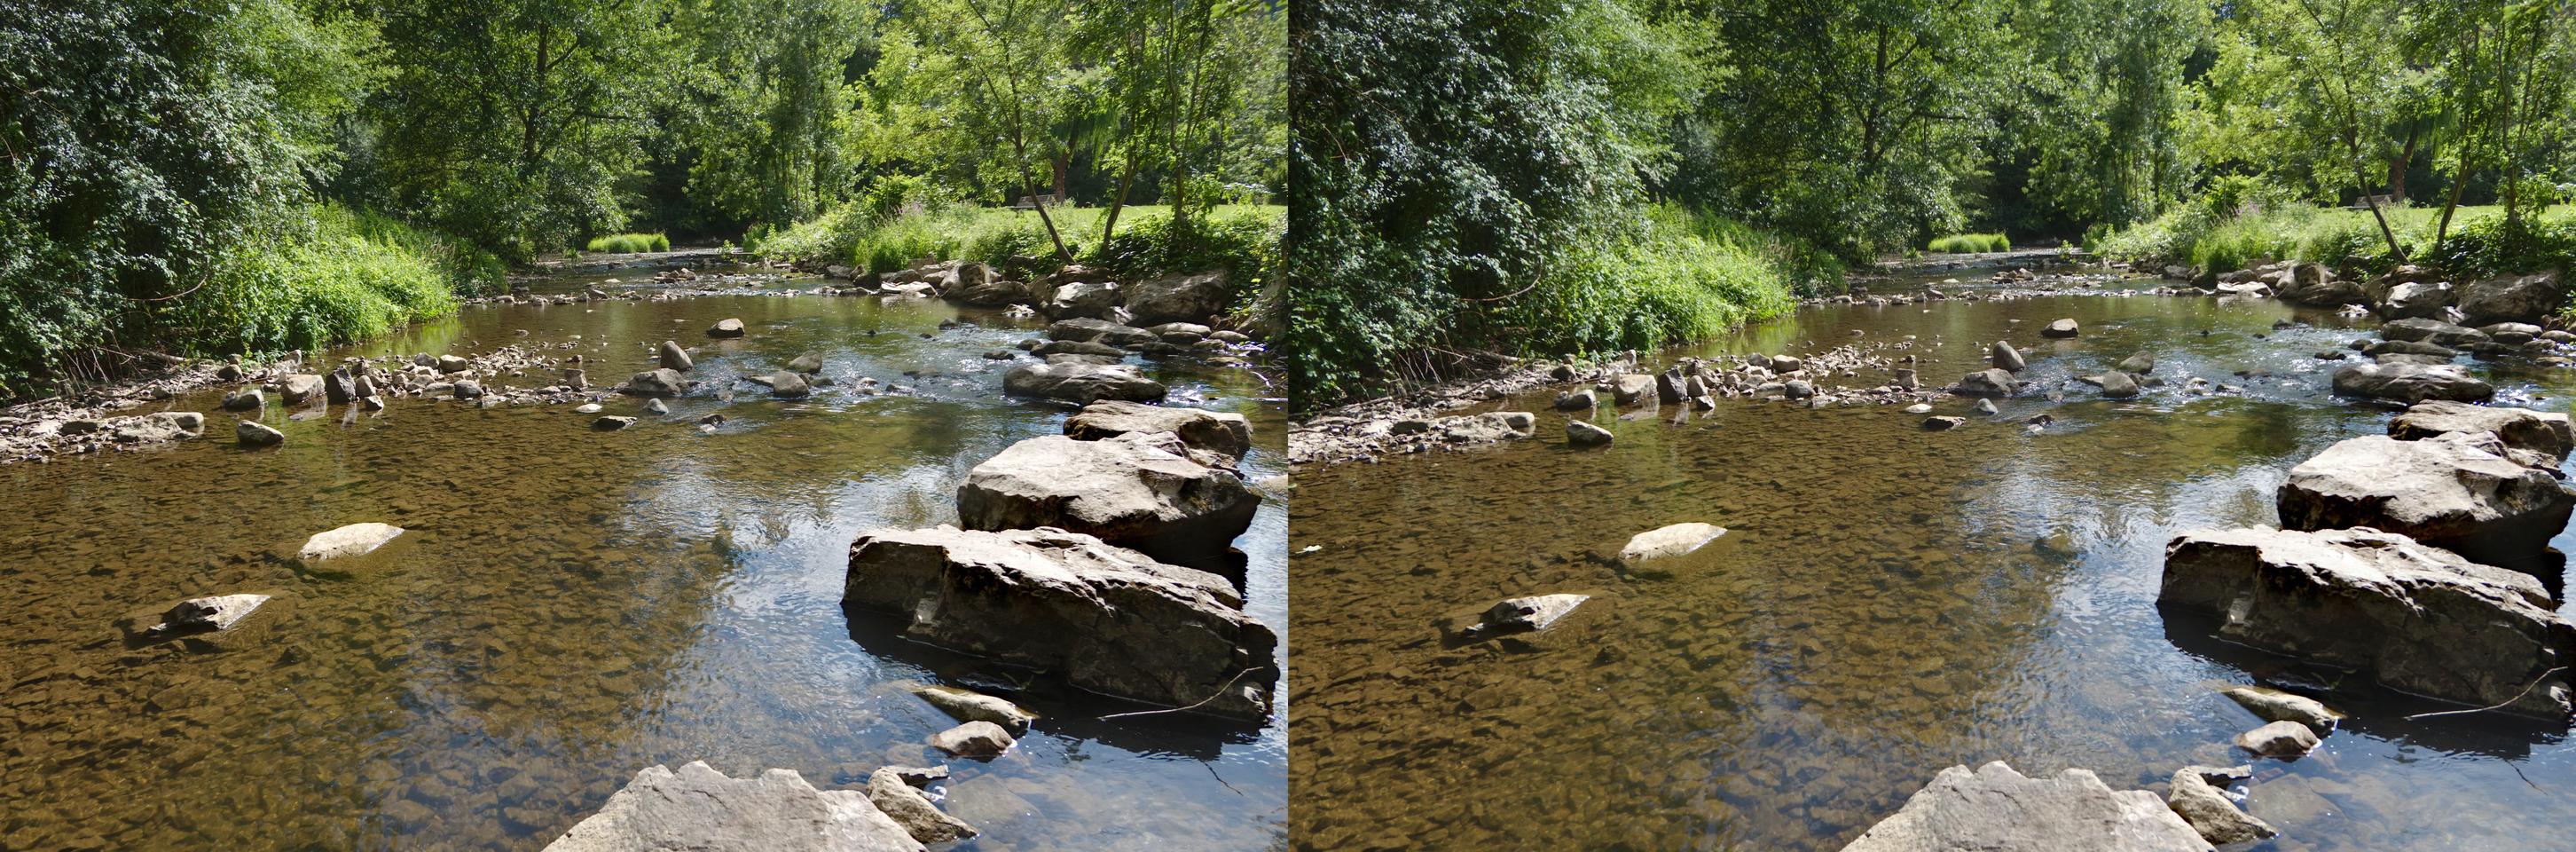 Rocks in river (2)